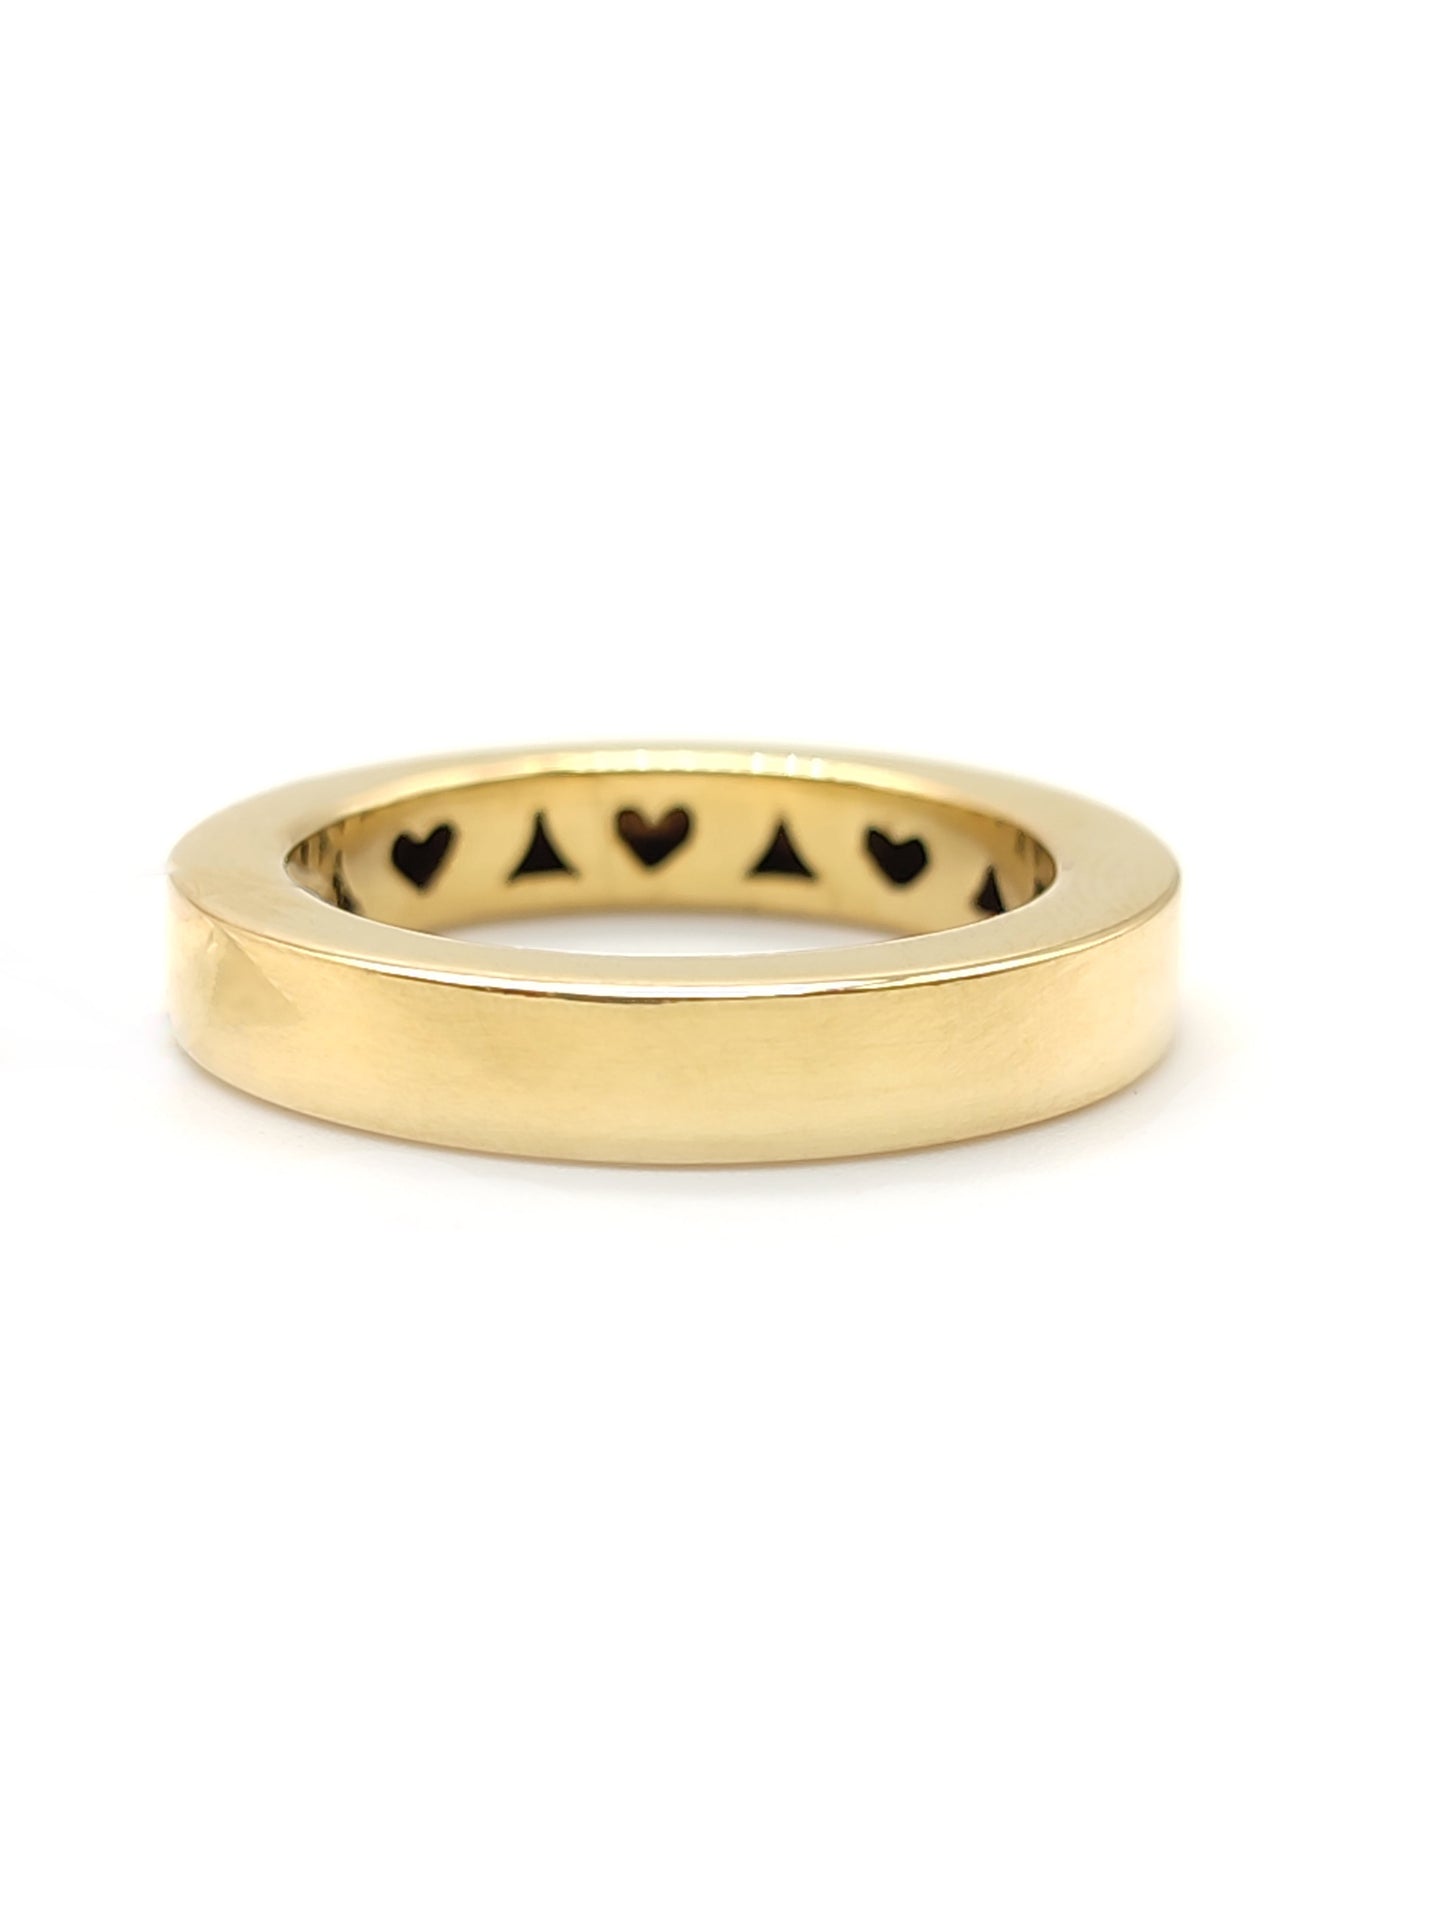 Pavan - Yellow gold band ring